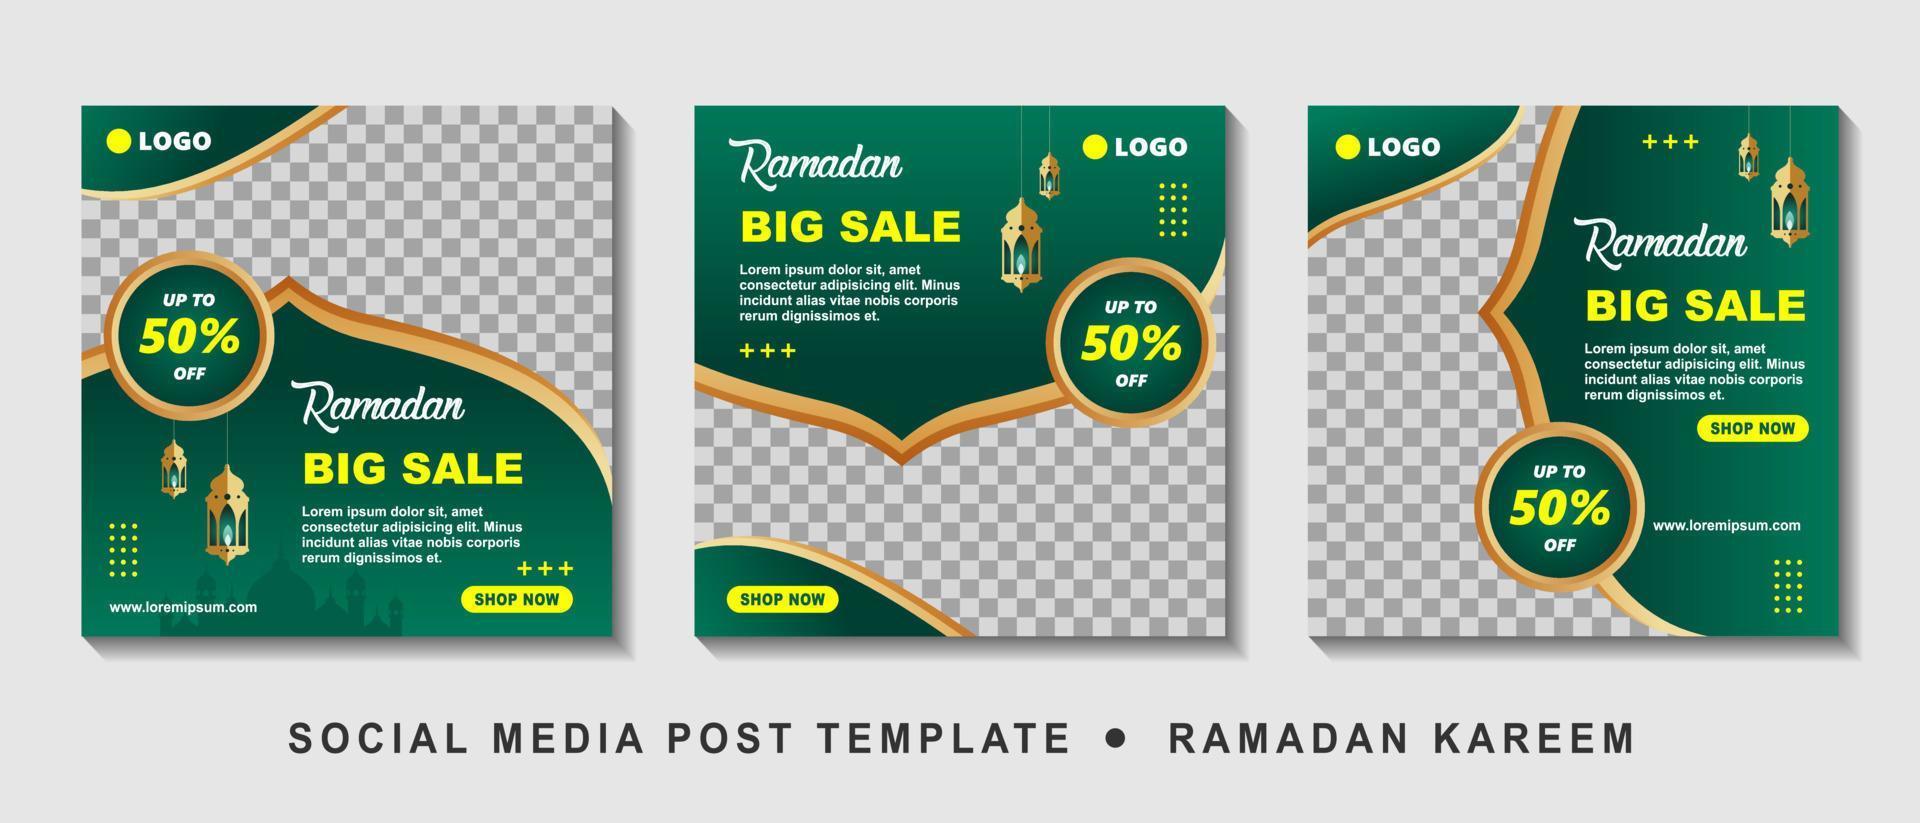 ramadan verkoop vierkante banner promotie sjabloon instellen. geschikt voor webpromotie en social media-sjabloonpost voor ramadan kareem-wenskaart, evenement en enz. vectorillustratie. vector